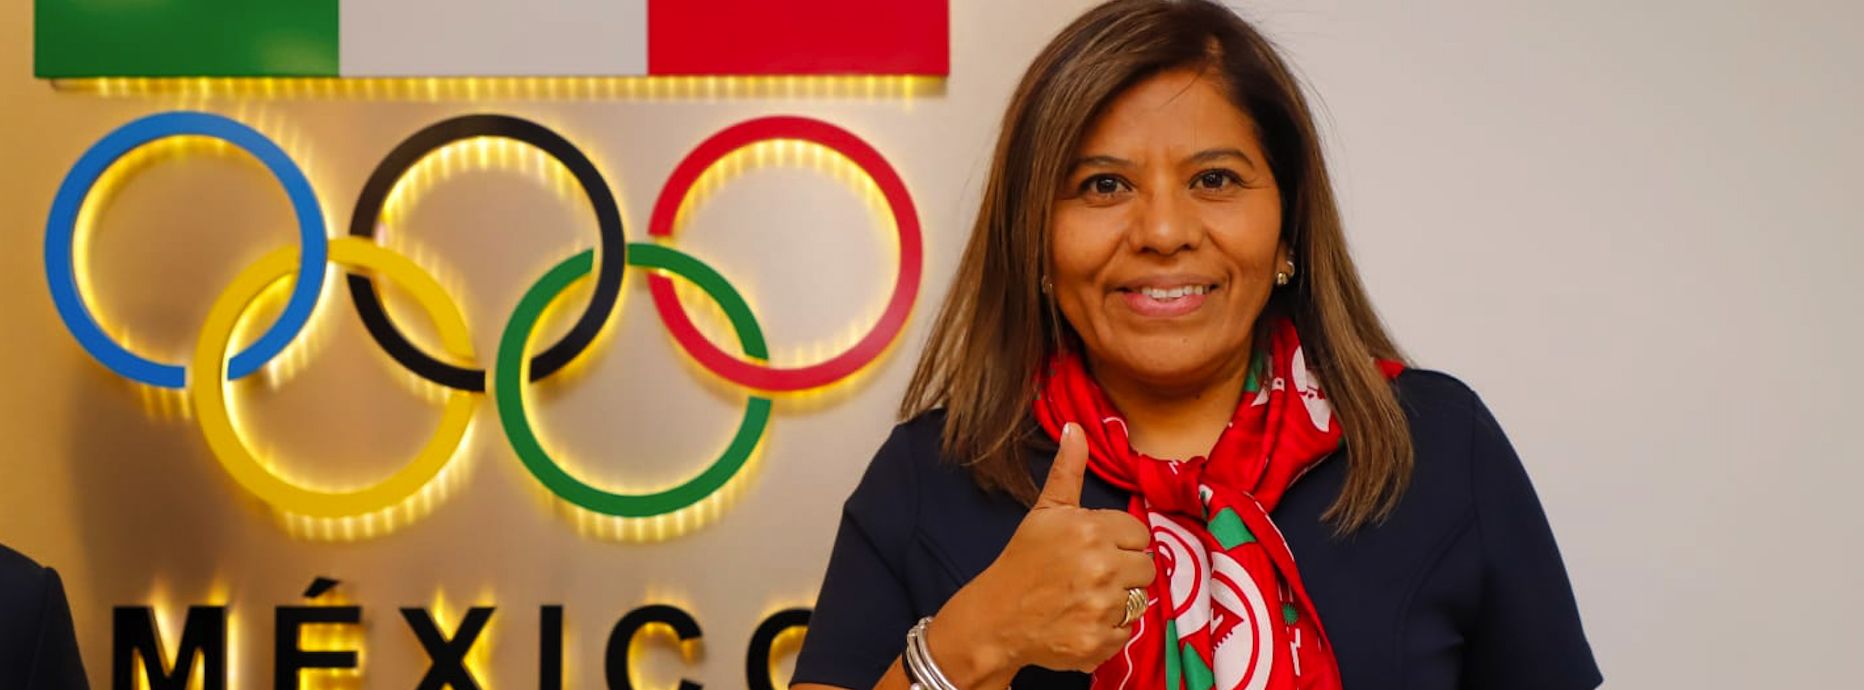 La mujer en el deporte cada vez rompe más paradigmas: María José Alcalá